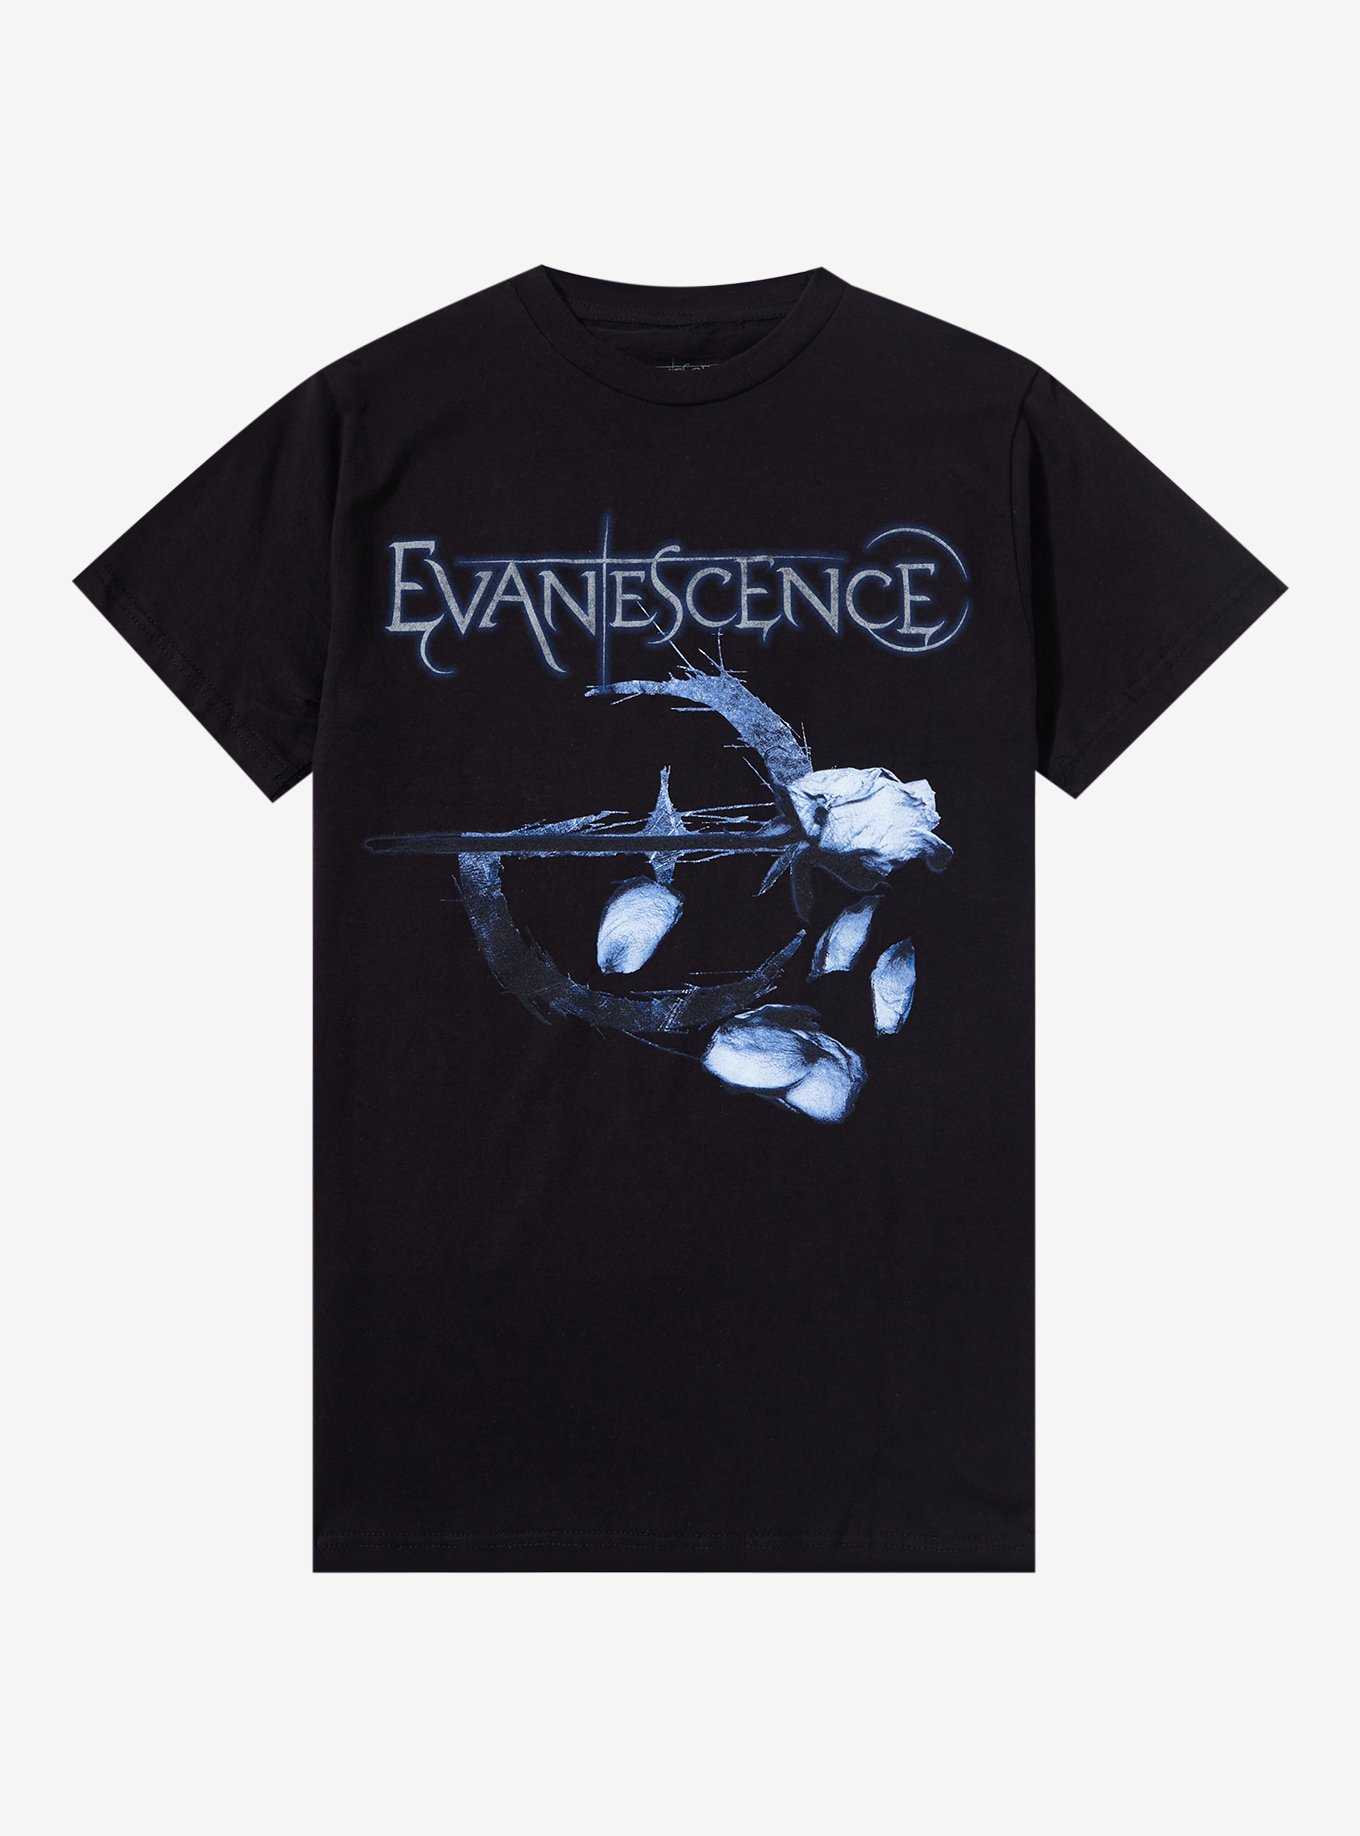 Evanescence Falling Petals Boyfriend Fit Girls T-Shirt, , hi-res